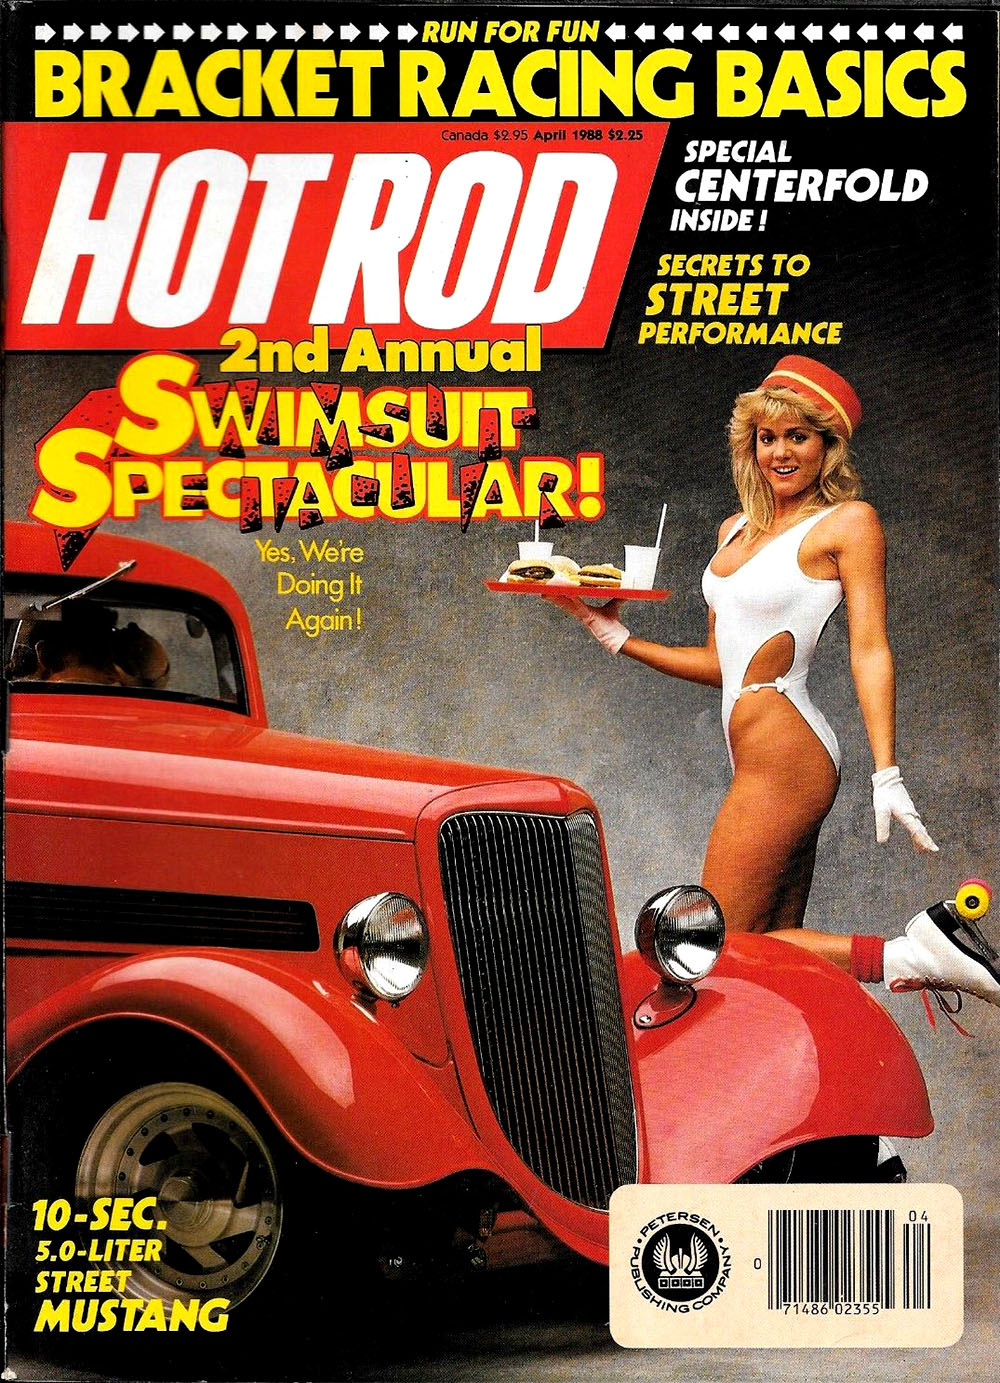 1988 roller skating girl magazine cover.